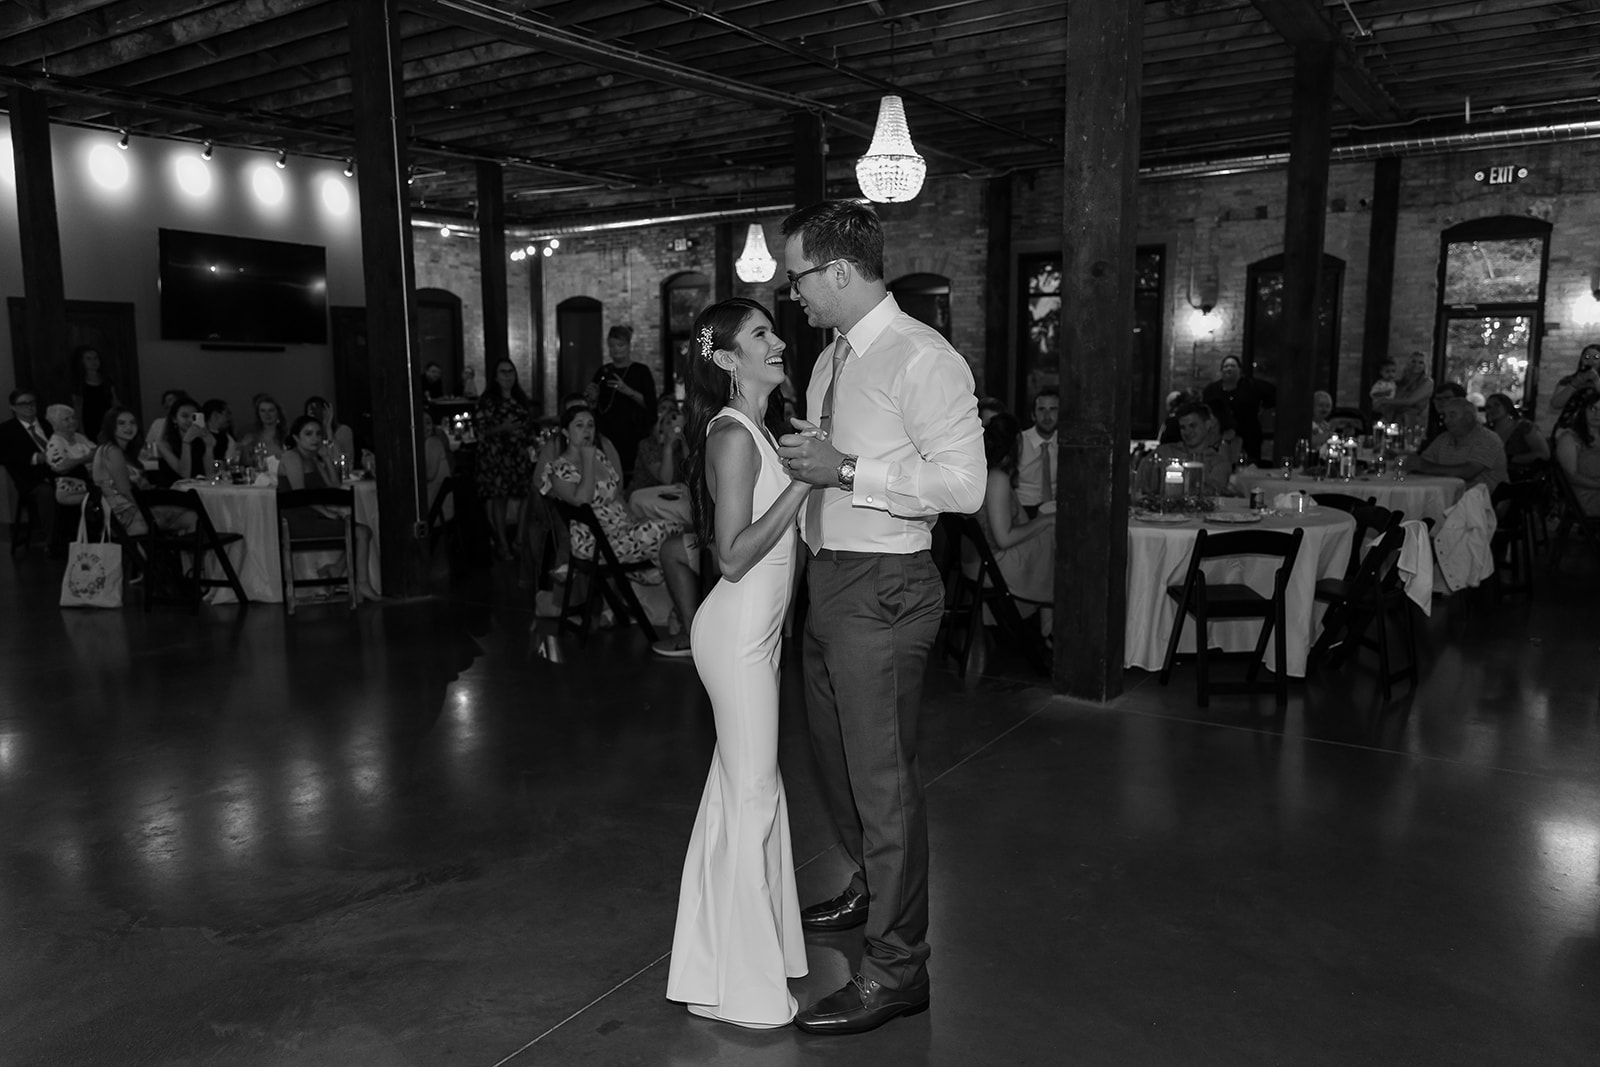 Bride dances with her groom